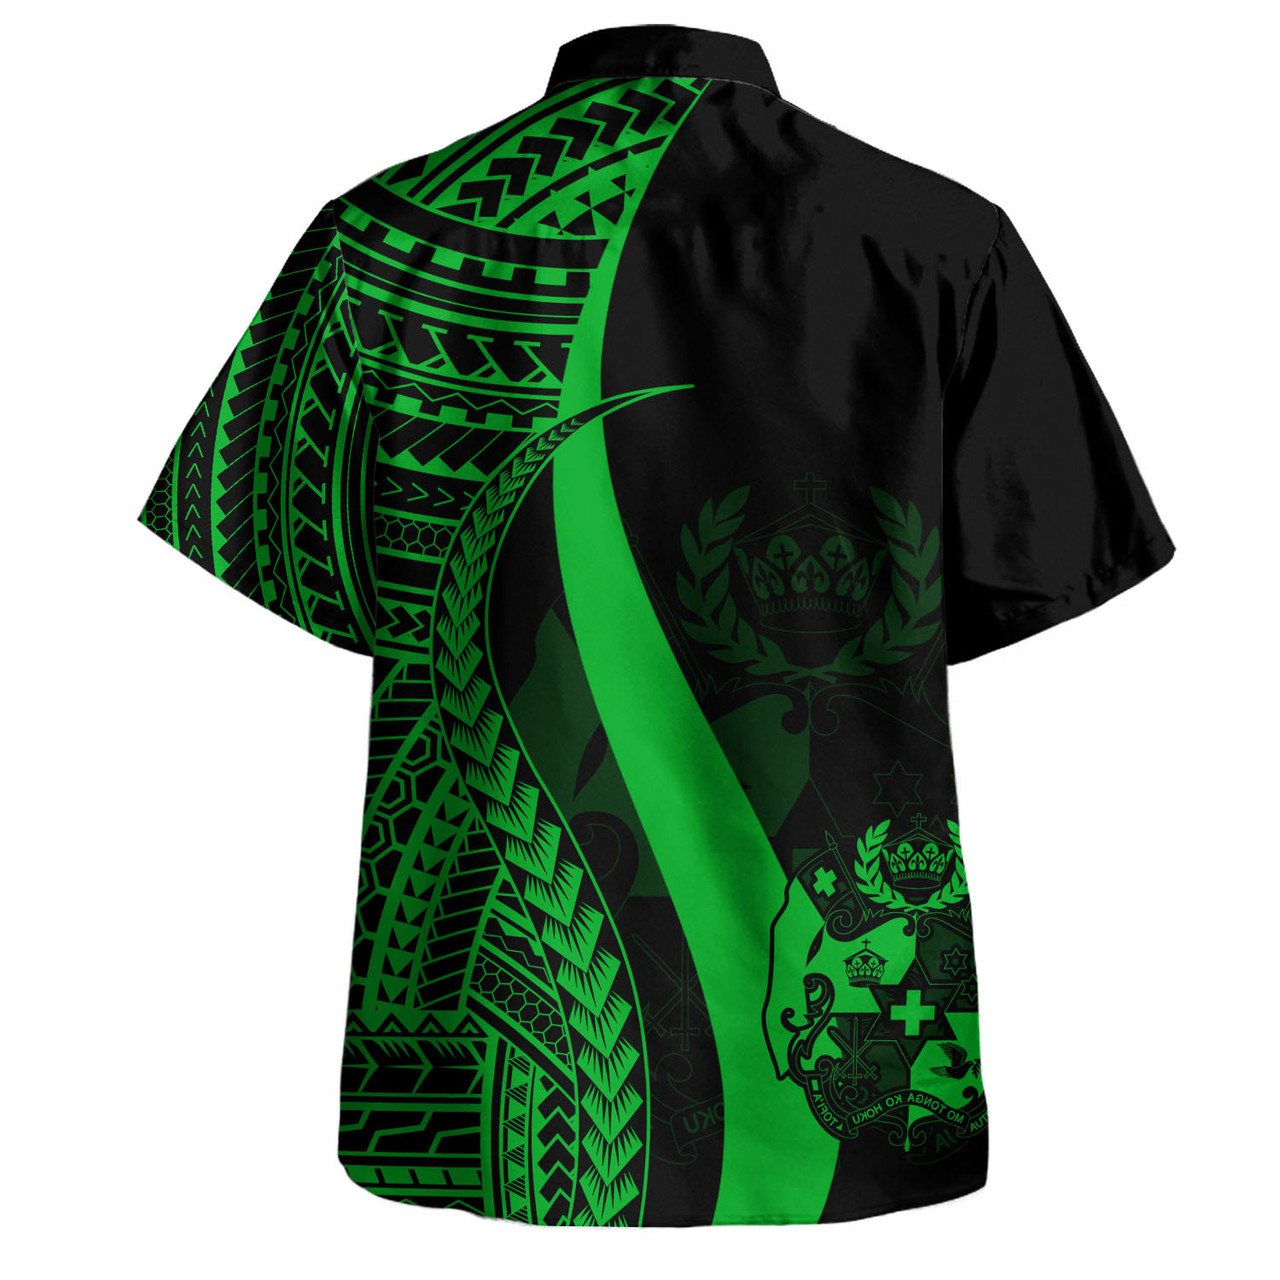 Tonga Custom Personalised Hawaiian Shirt Polynesian Tentacle Tribal Pattern